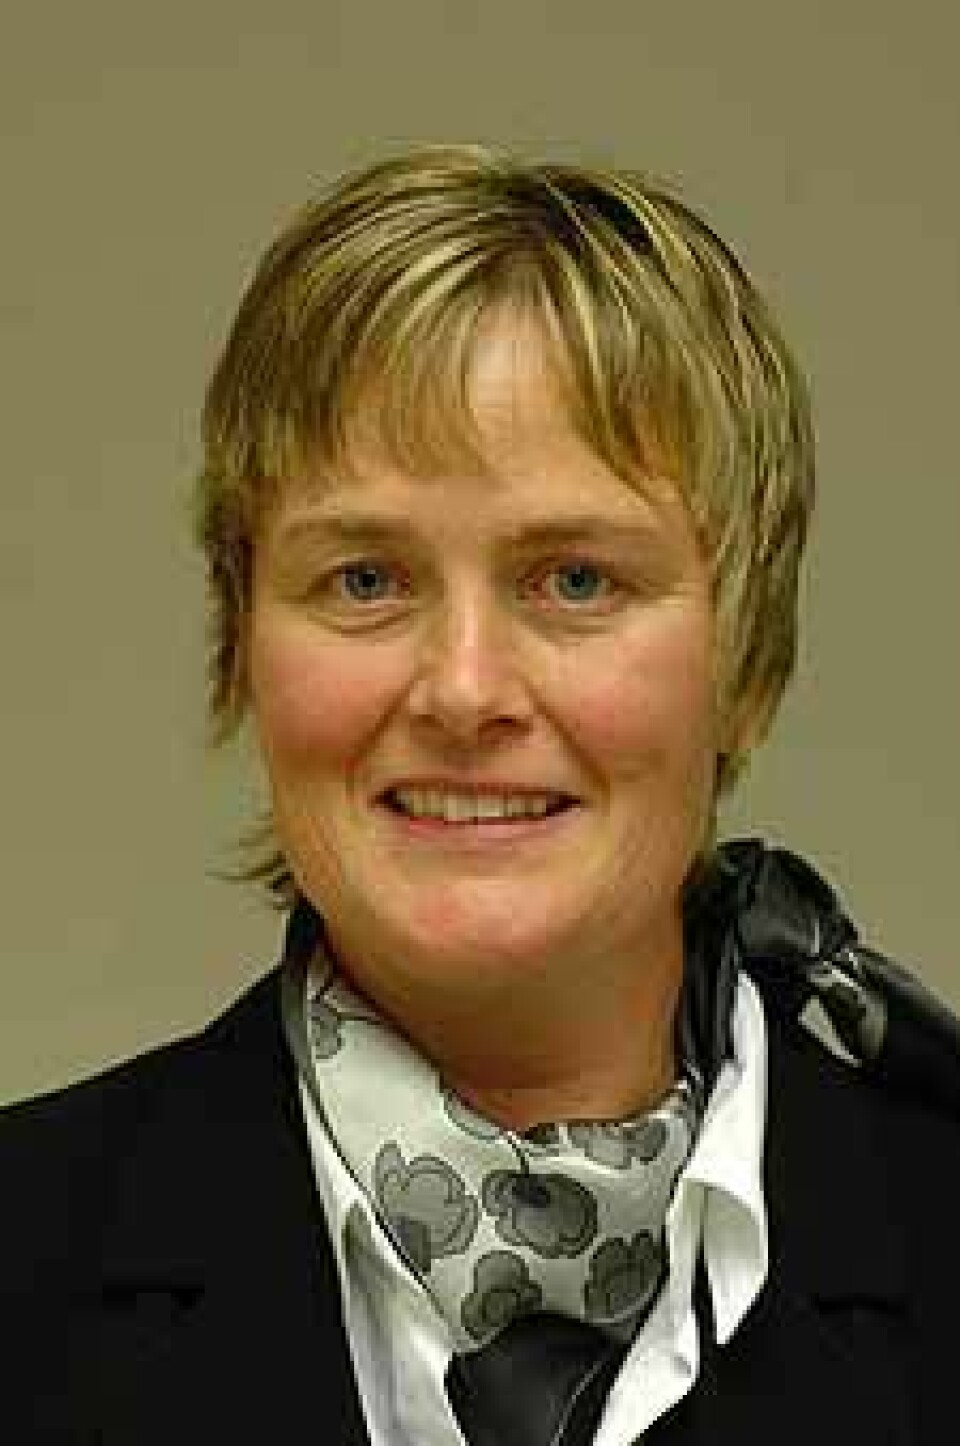 Margrethe Elin Vika disputerte 21. november for ph.d.-graden med en avhandling om sprøytefobi.